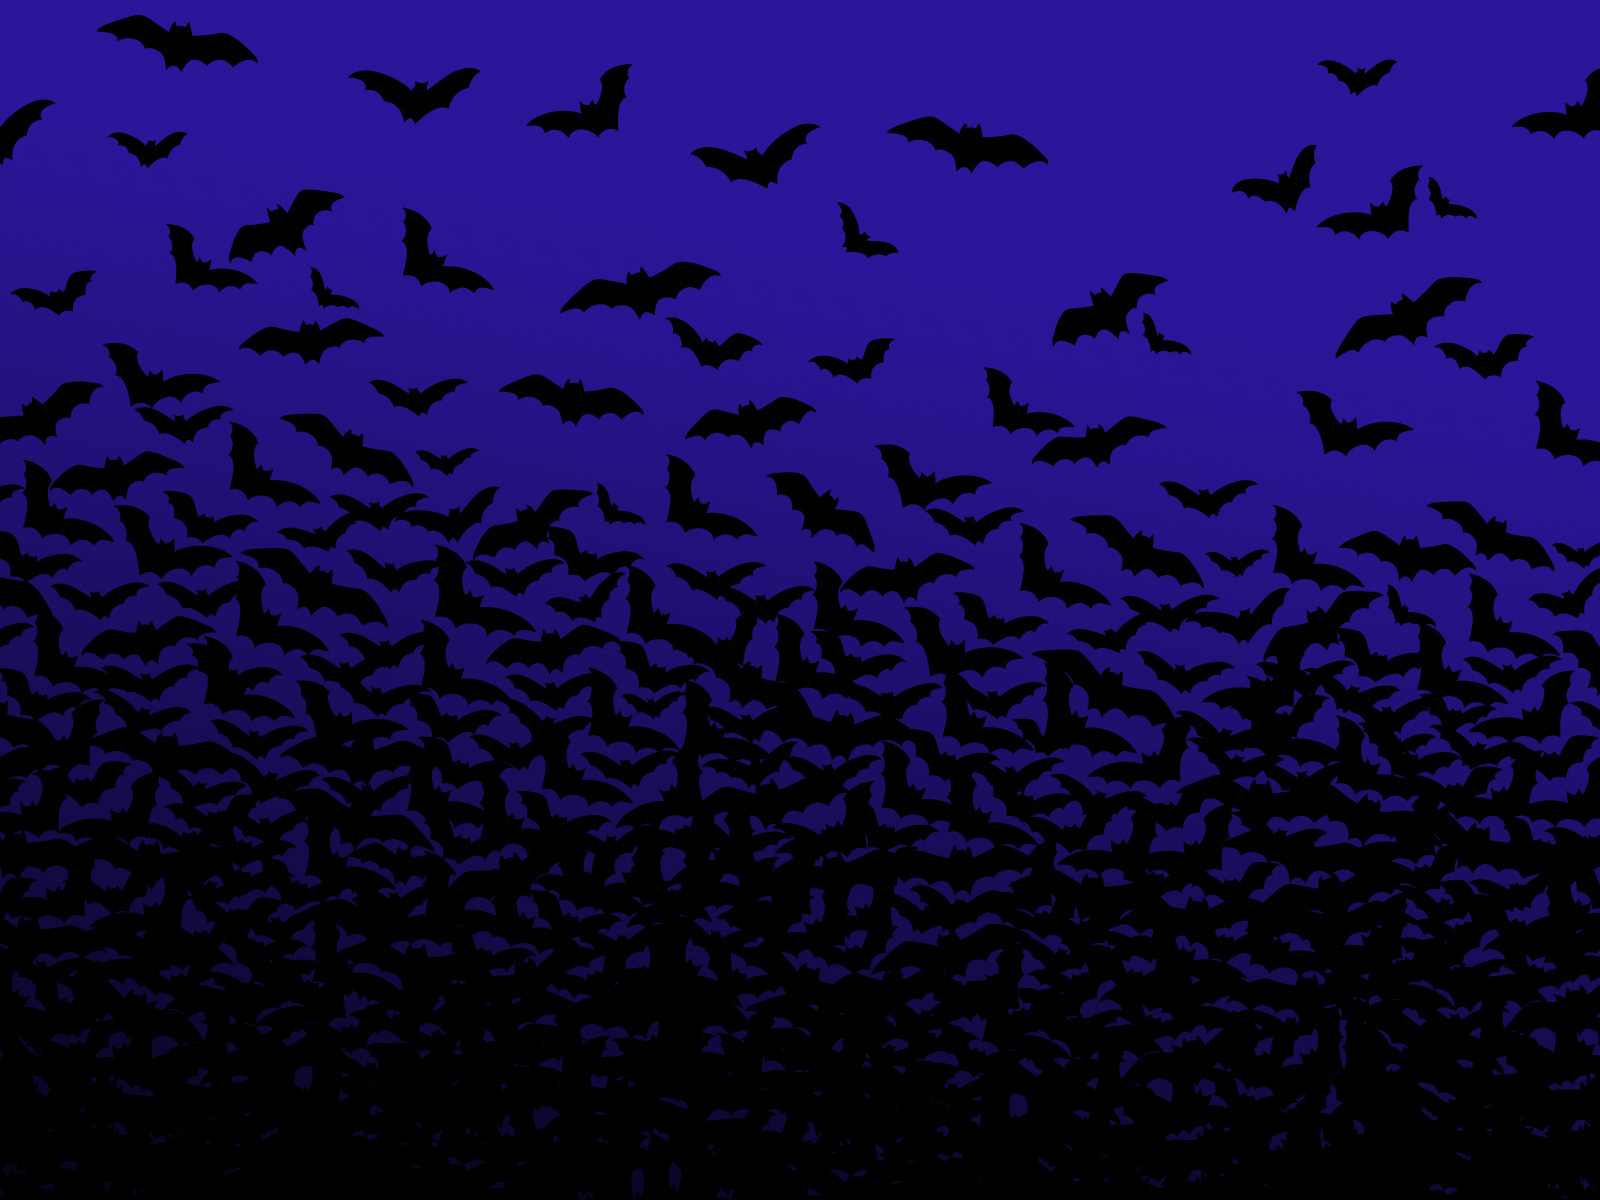 Animal Bat HD Wallpaper | Background Image